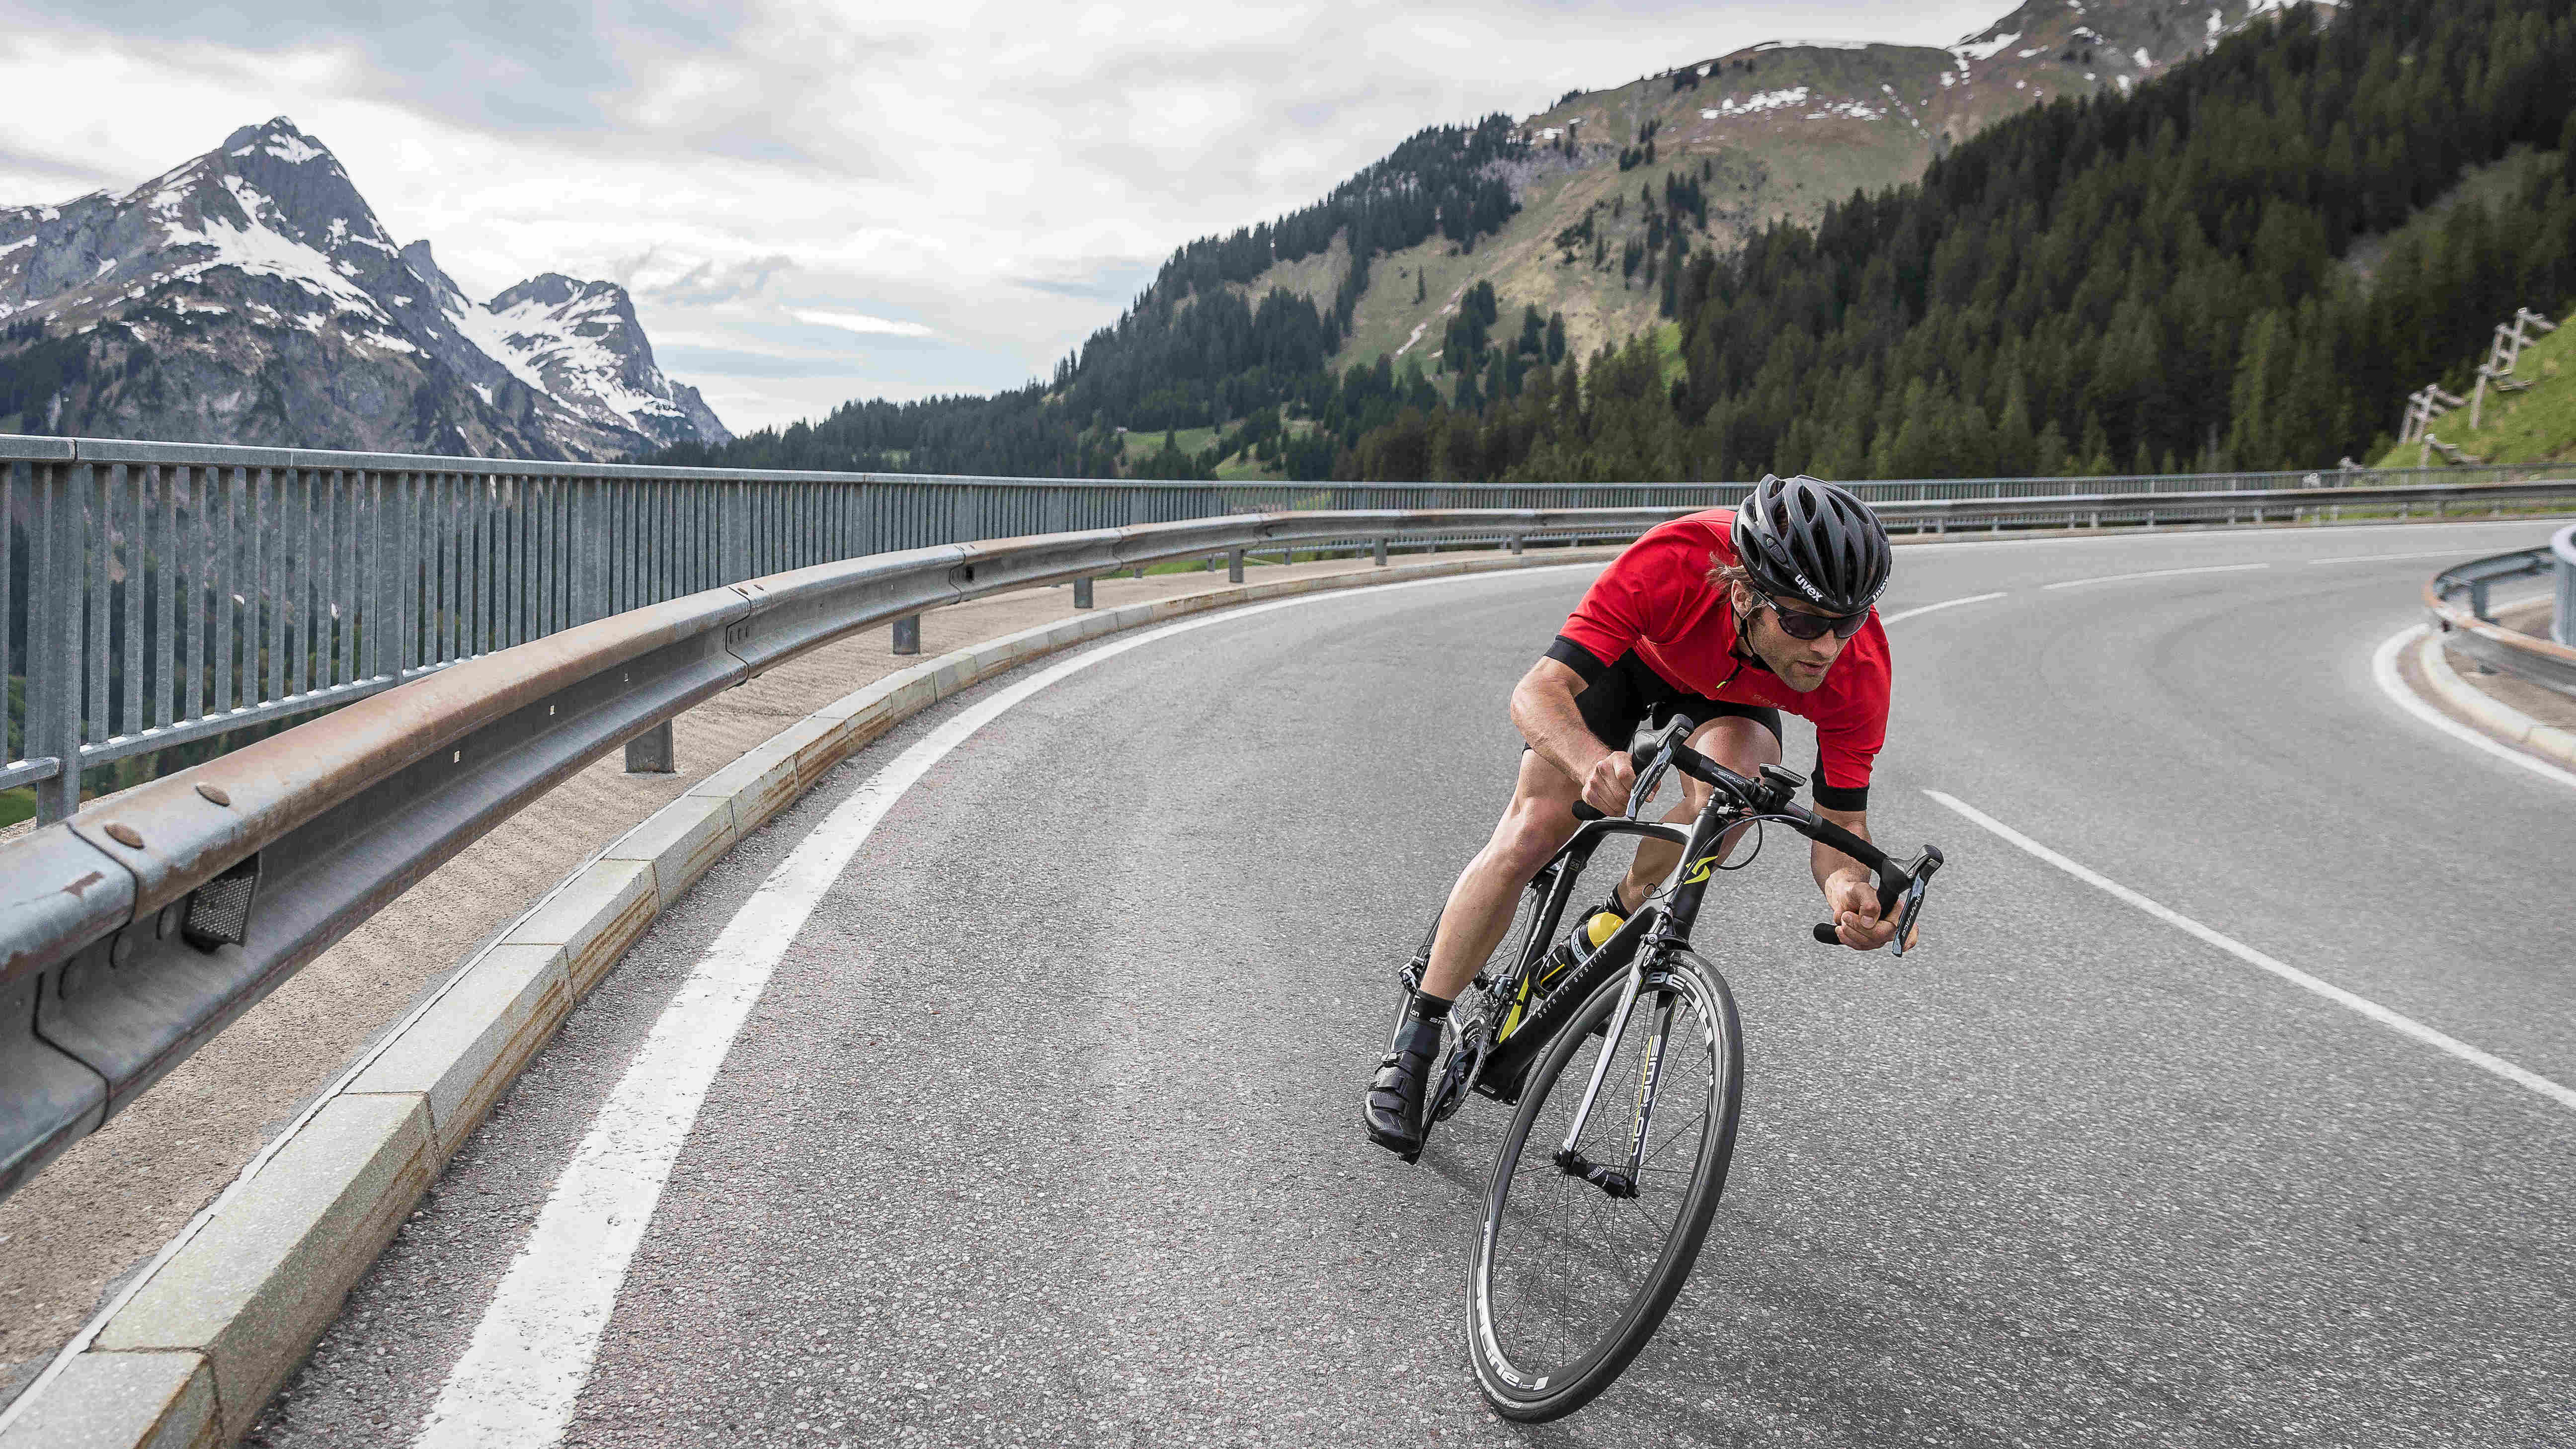 Garmin Edge Explore, le GPS vélo dédié au cyclotourisme et à l